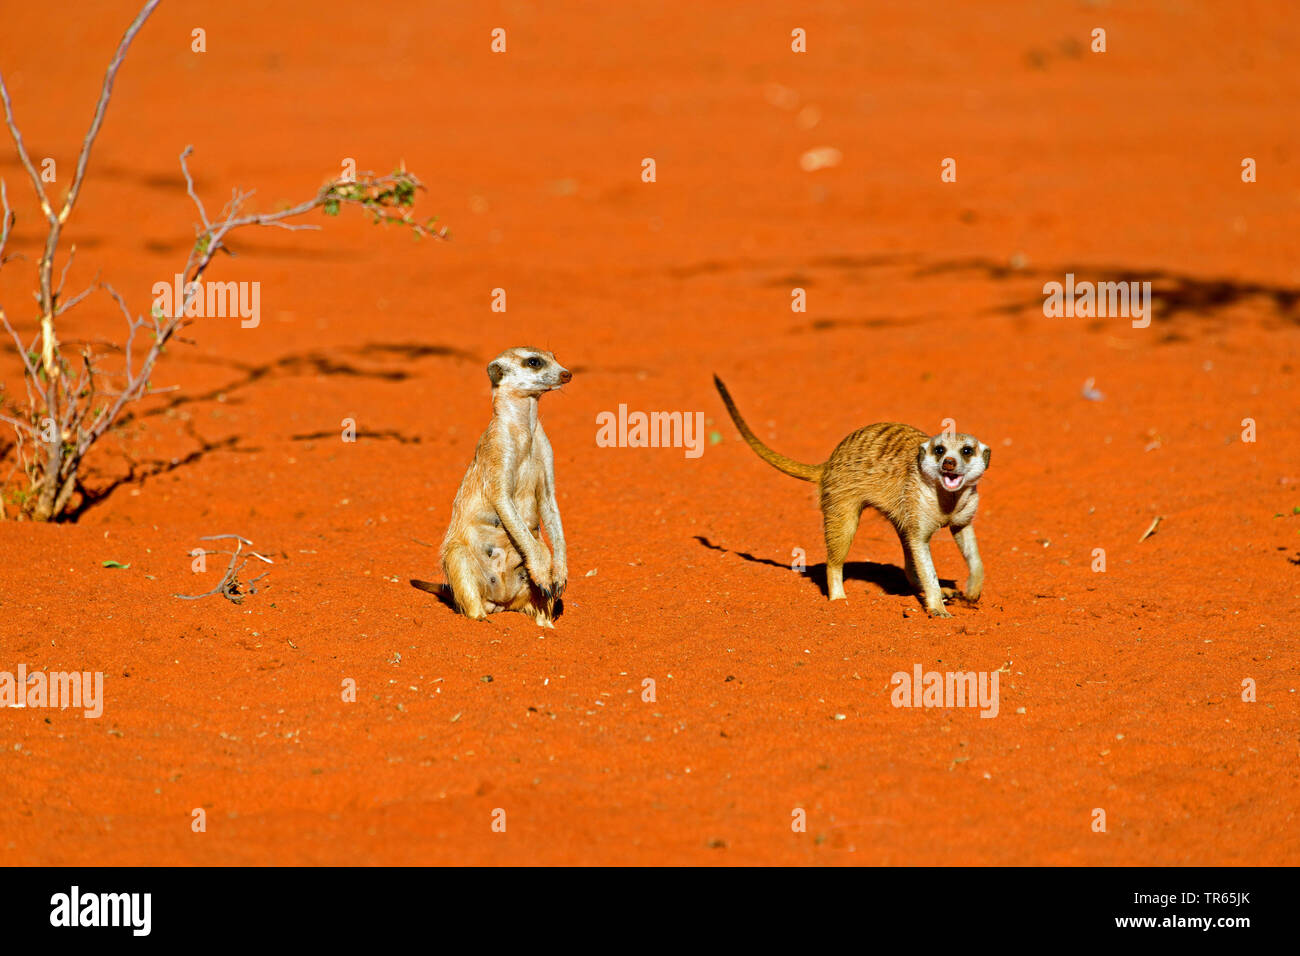 À queue fine, suricate (Suricata suricatta) suricates, deux suricates de peering, Namibie, Damaraland Banque D'Images